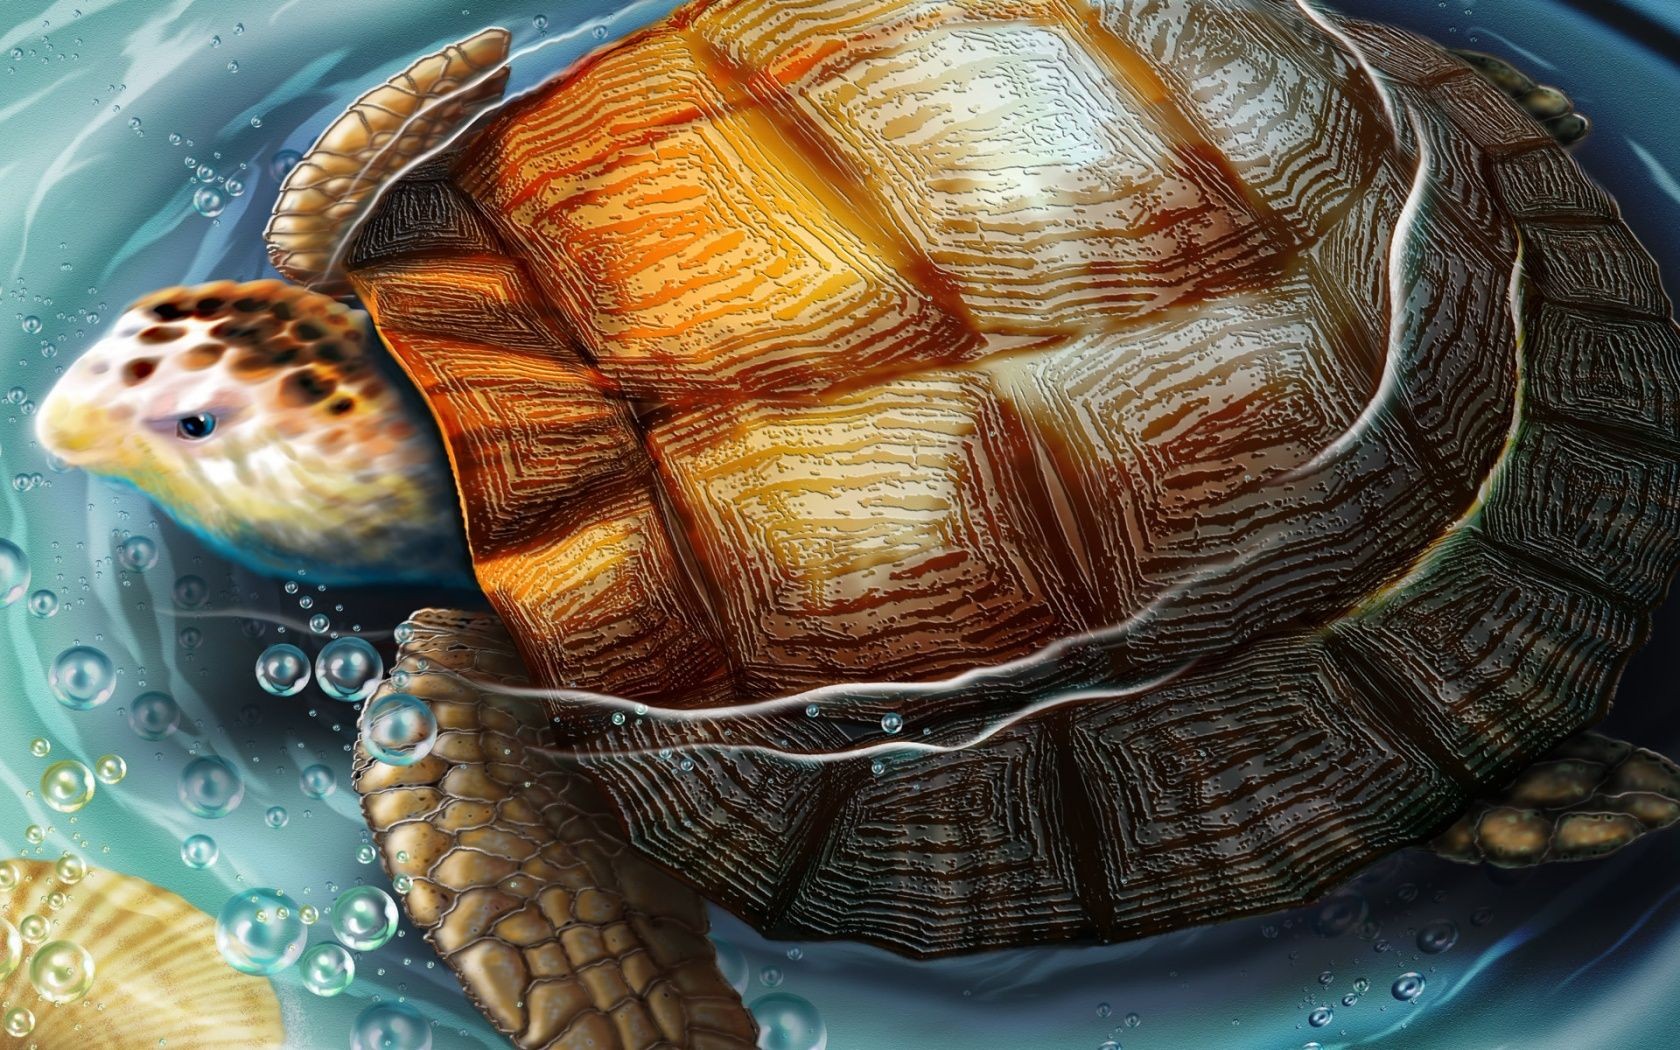 General 1680x1050 turtle animals artwork